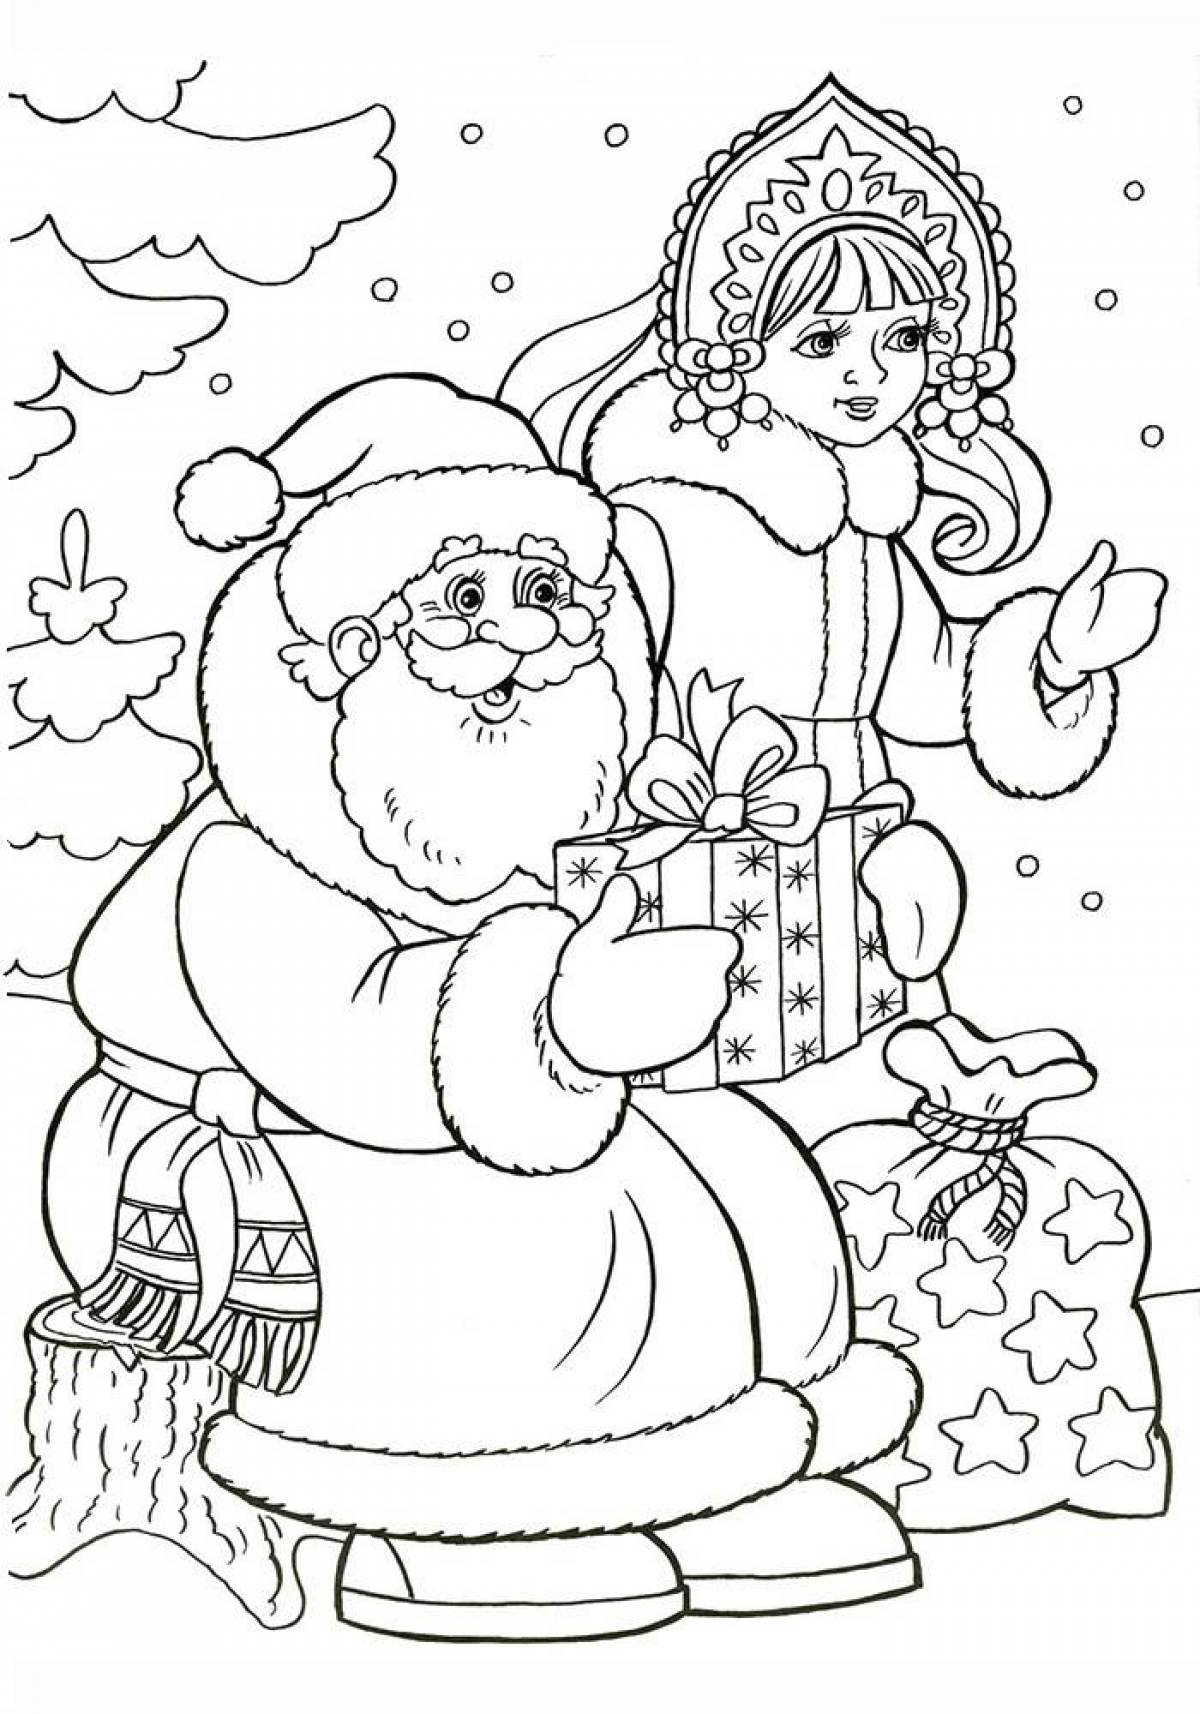 Santa coloring inspiration